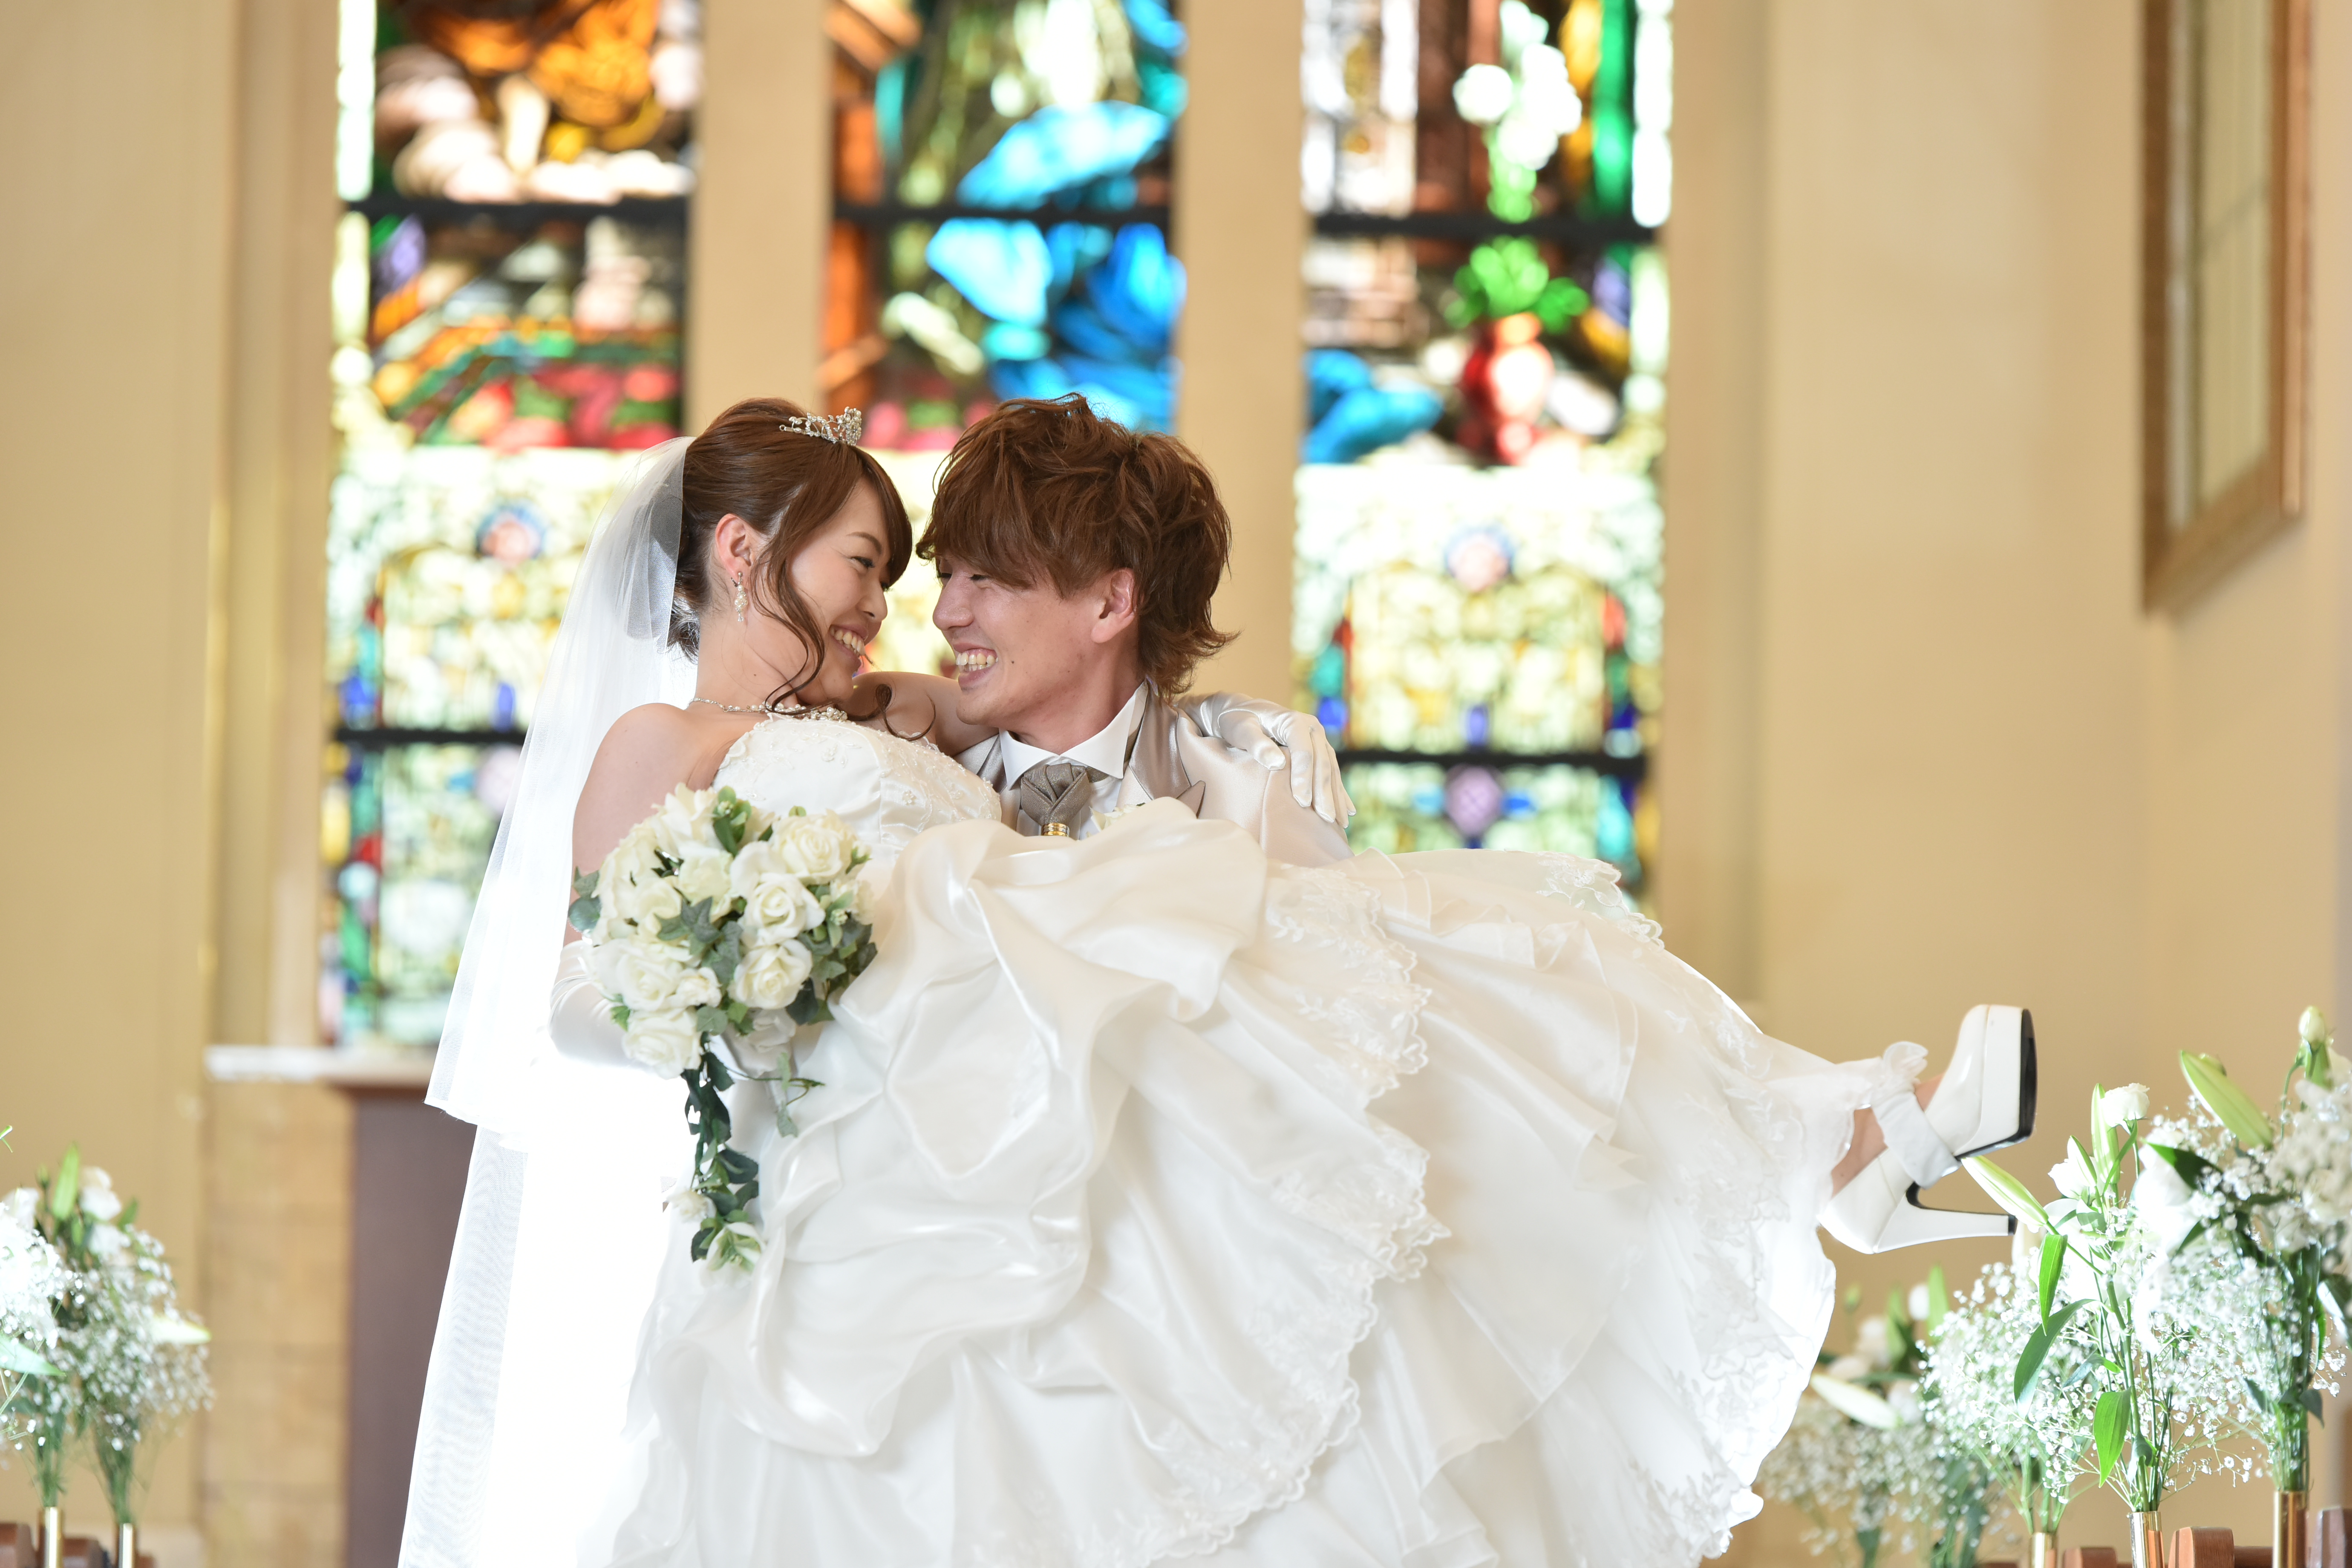 憧れのお姫様抱っこ マリエール太田 群馬県太田市の結婚式場 披露宴会場 挙式